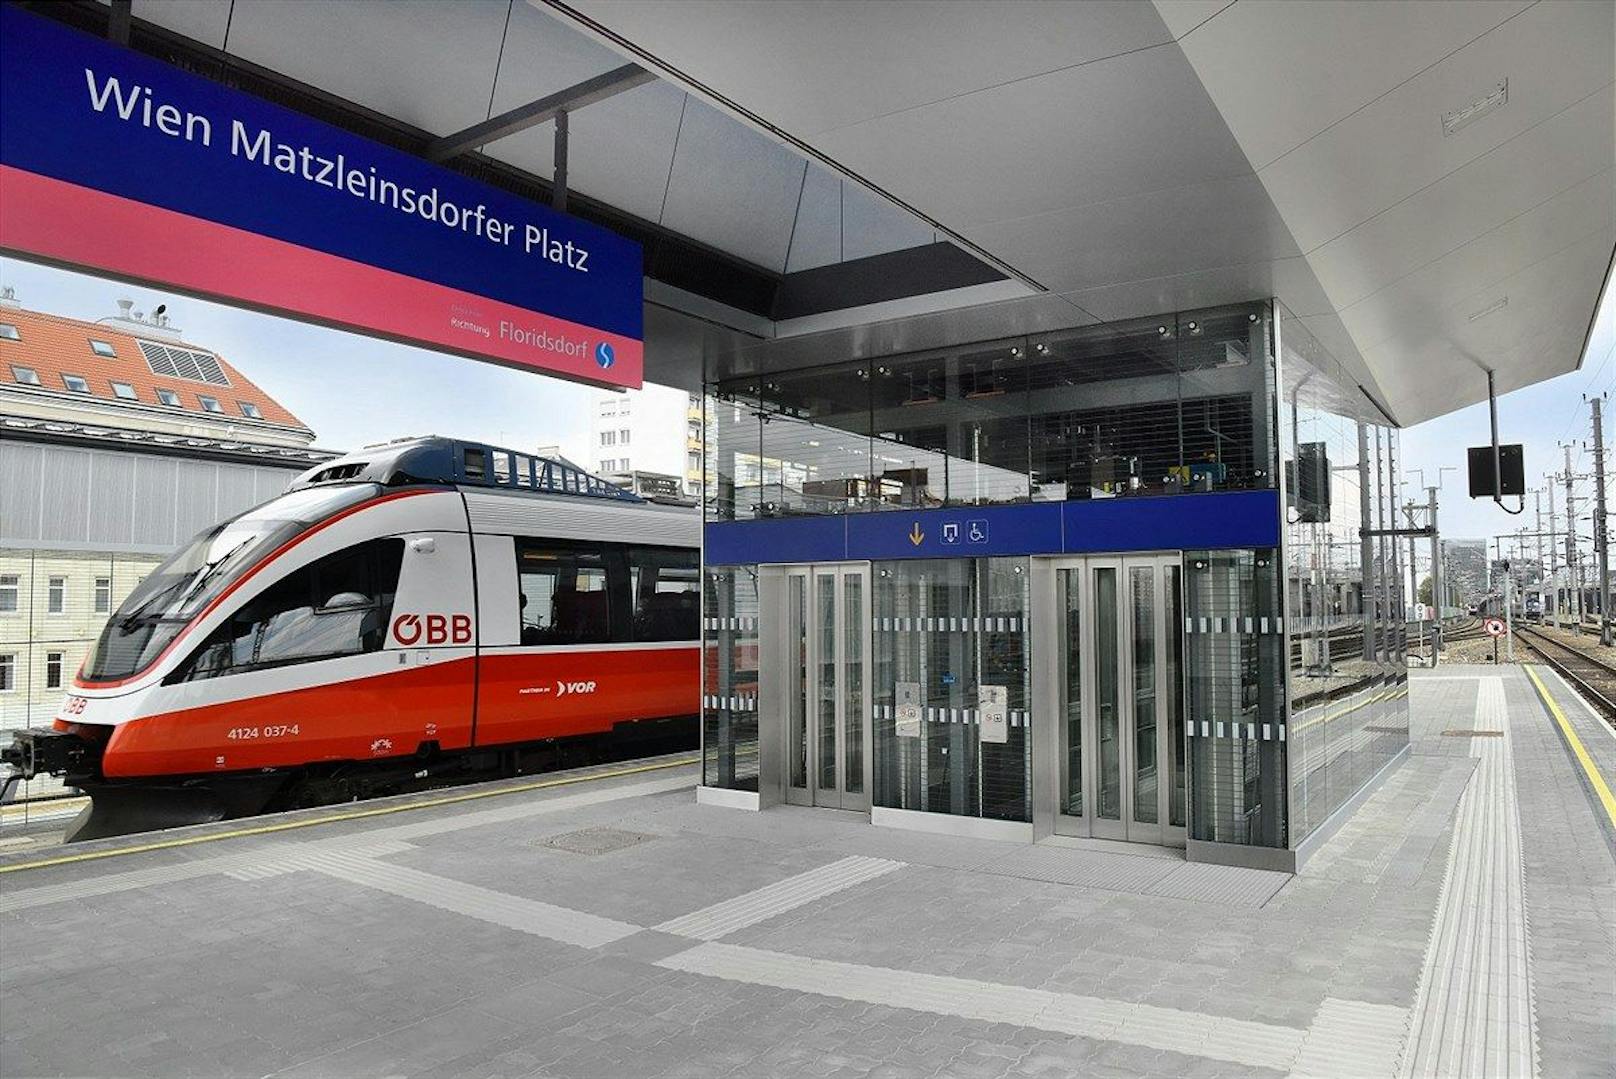 Station Matzleindorfer Platz nach 1 Jahr wieder offen